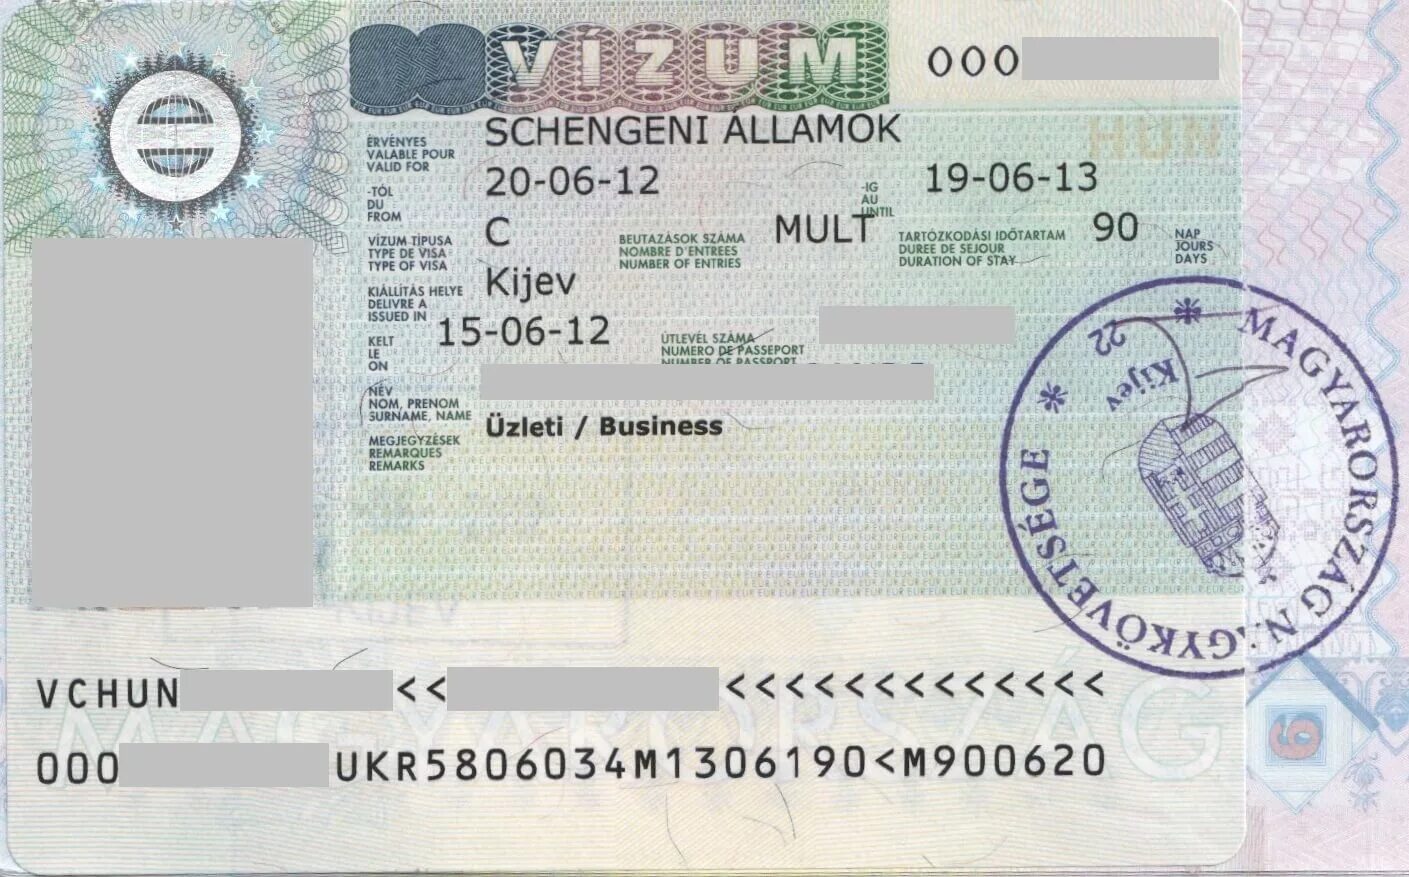 Виза страна выдачи. Шенгенская виза. Виза в Венгрию. Деловая виза.